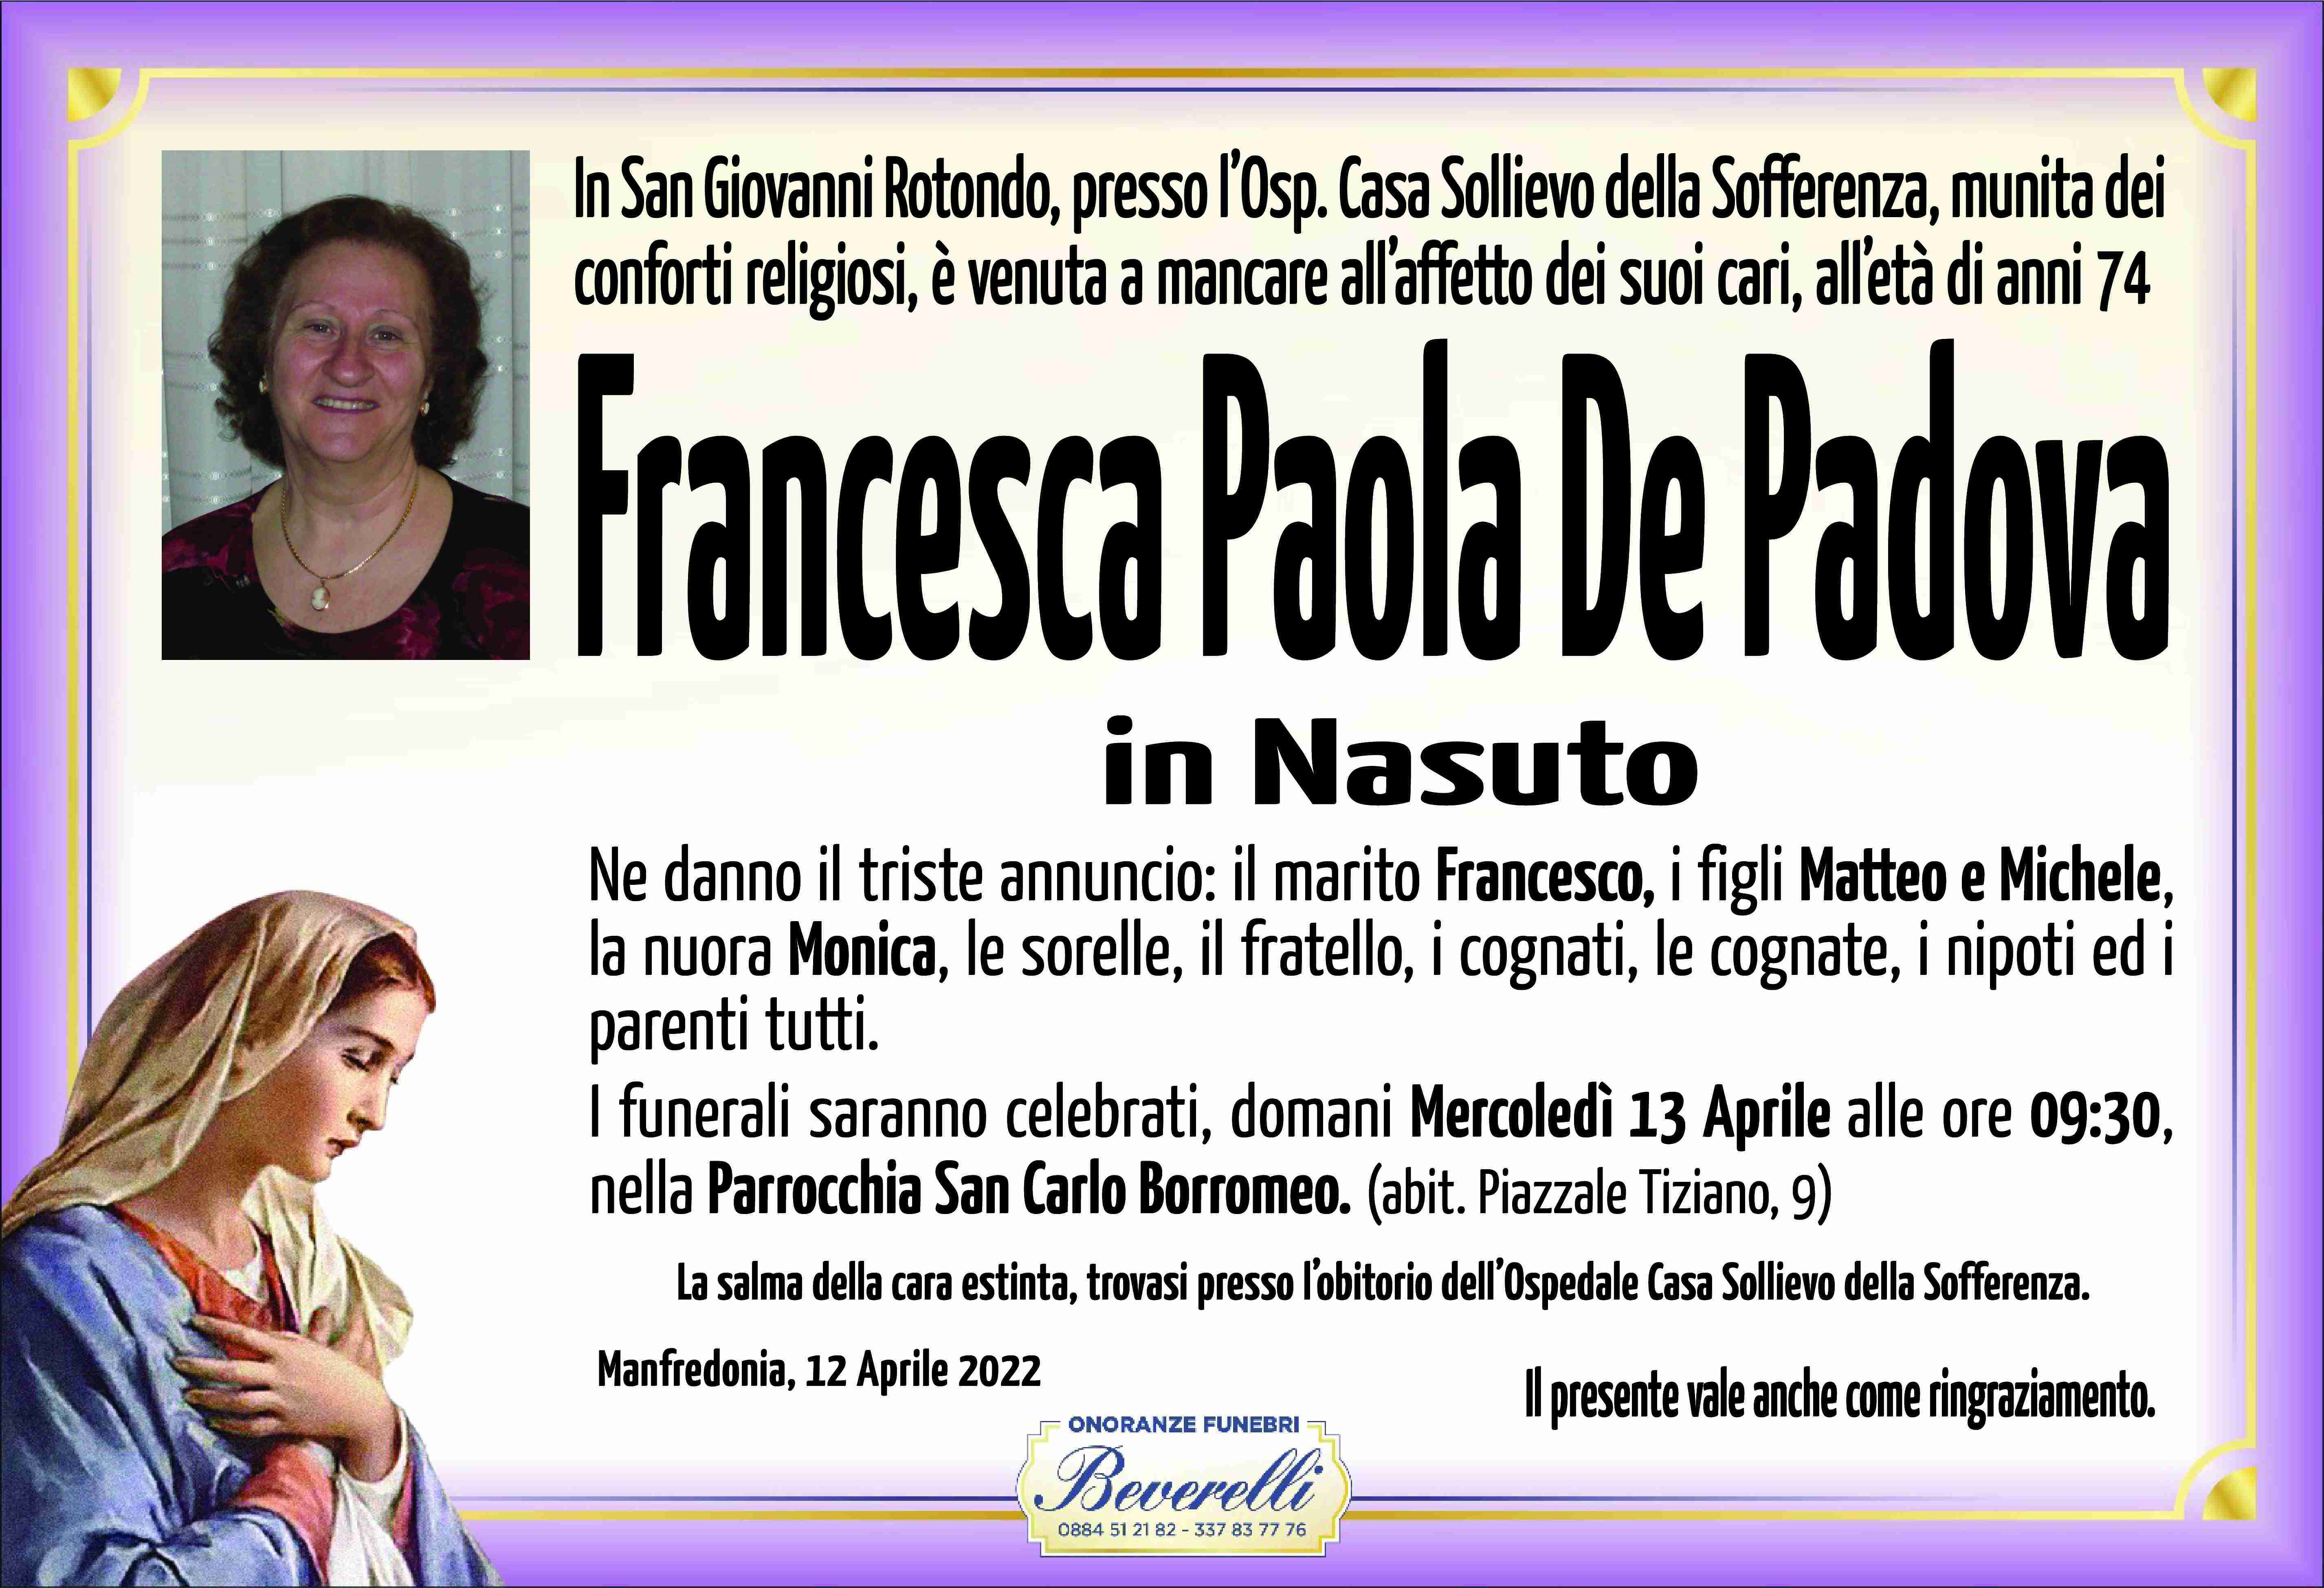 Francesca Paola De Padova